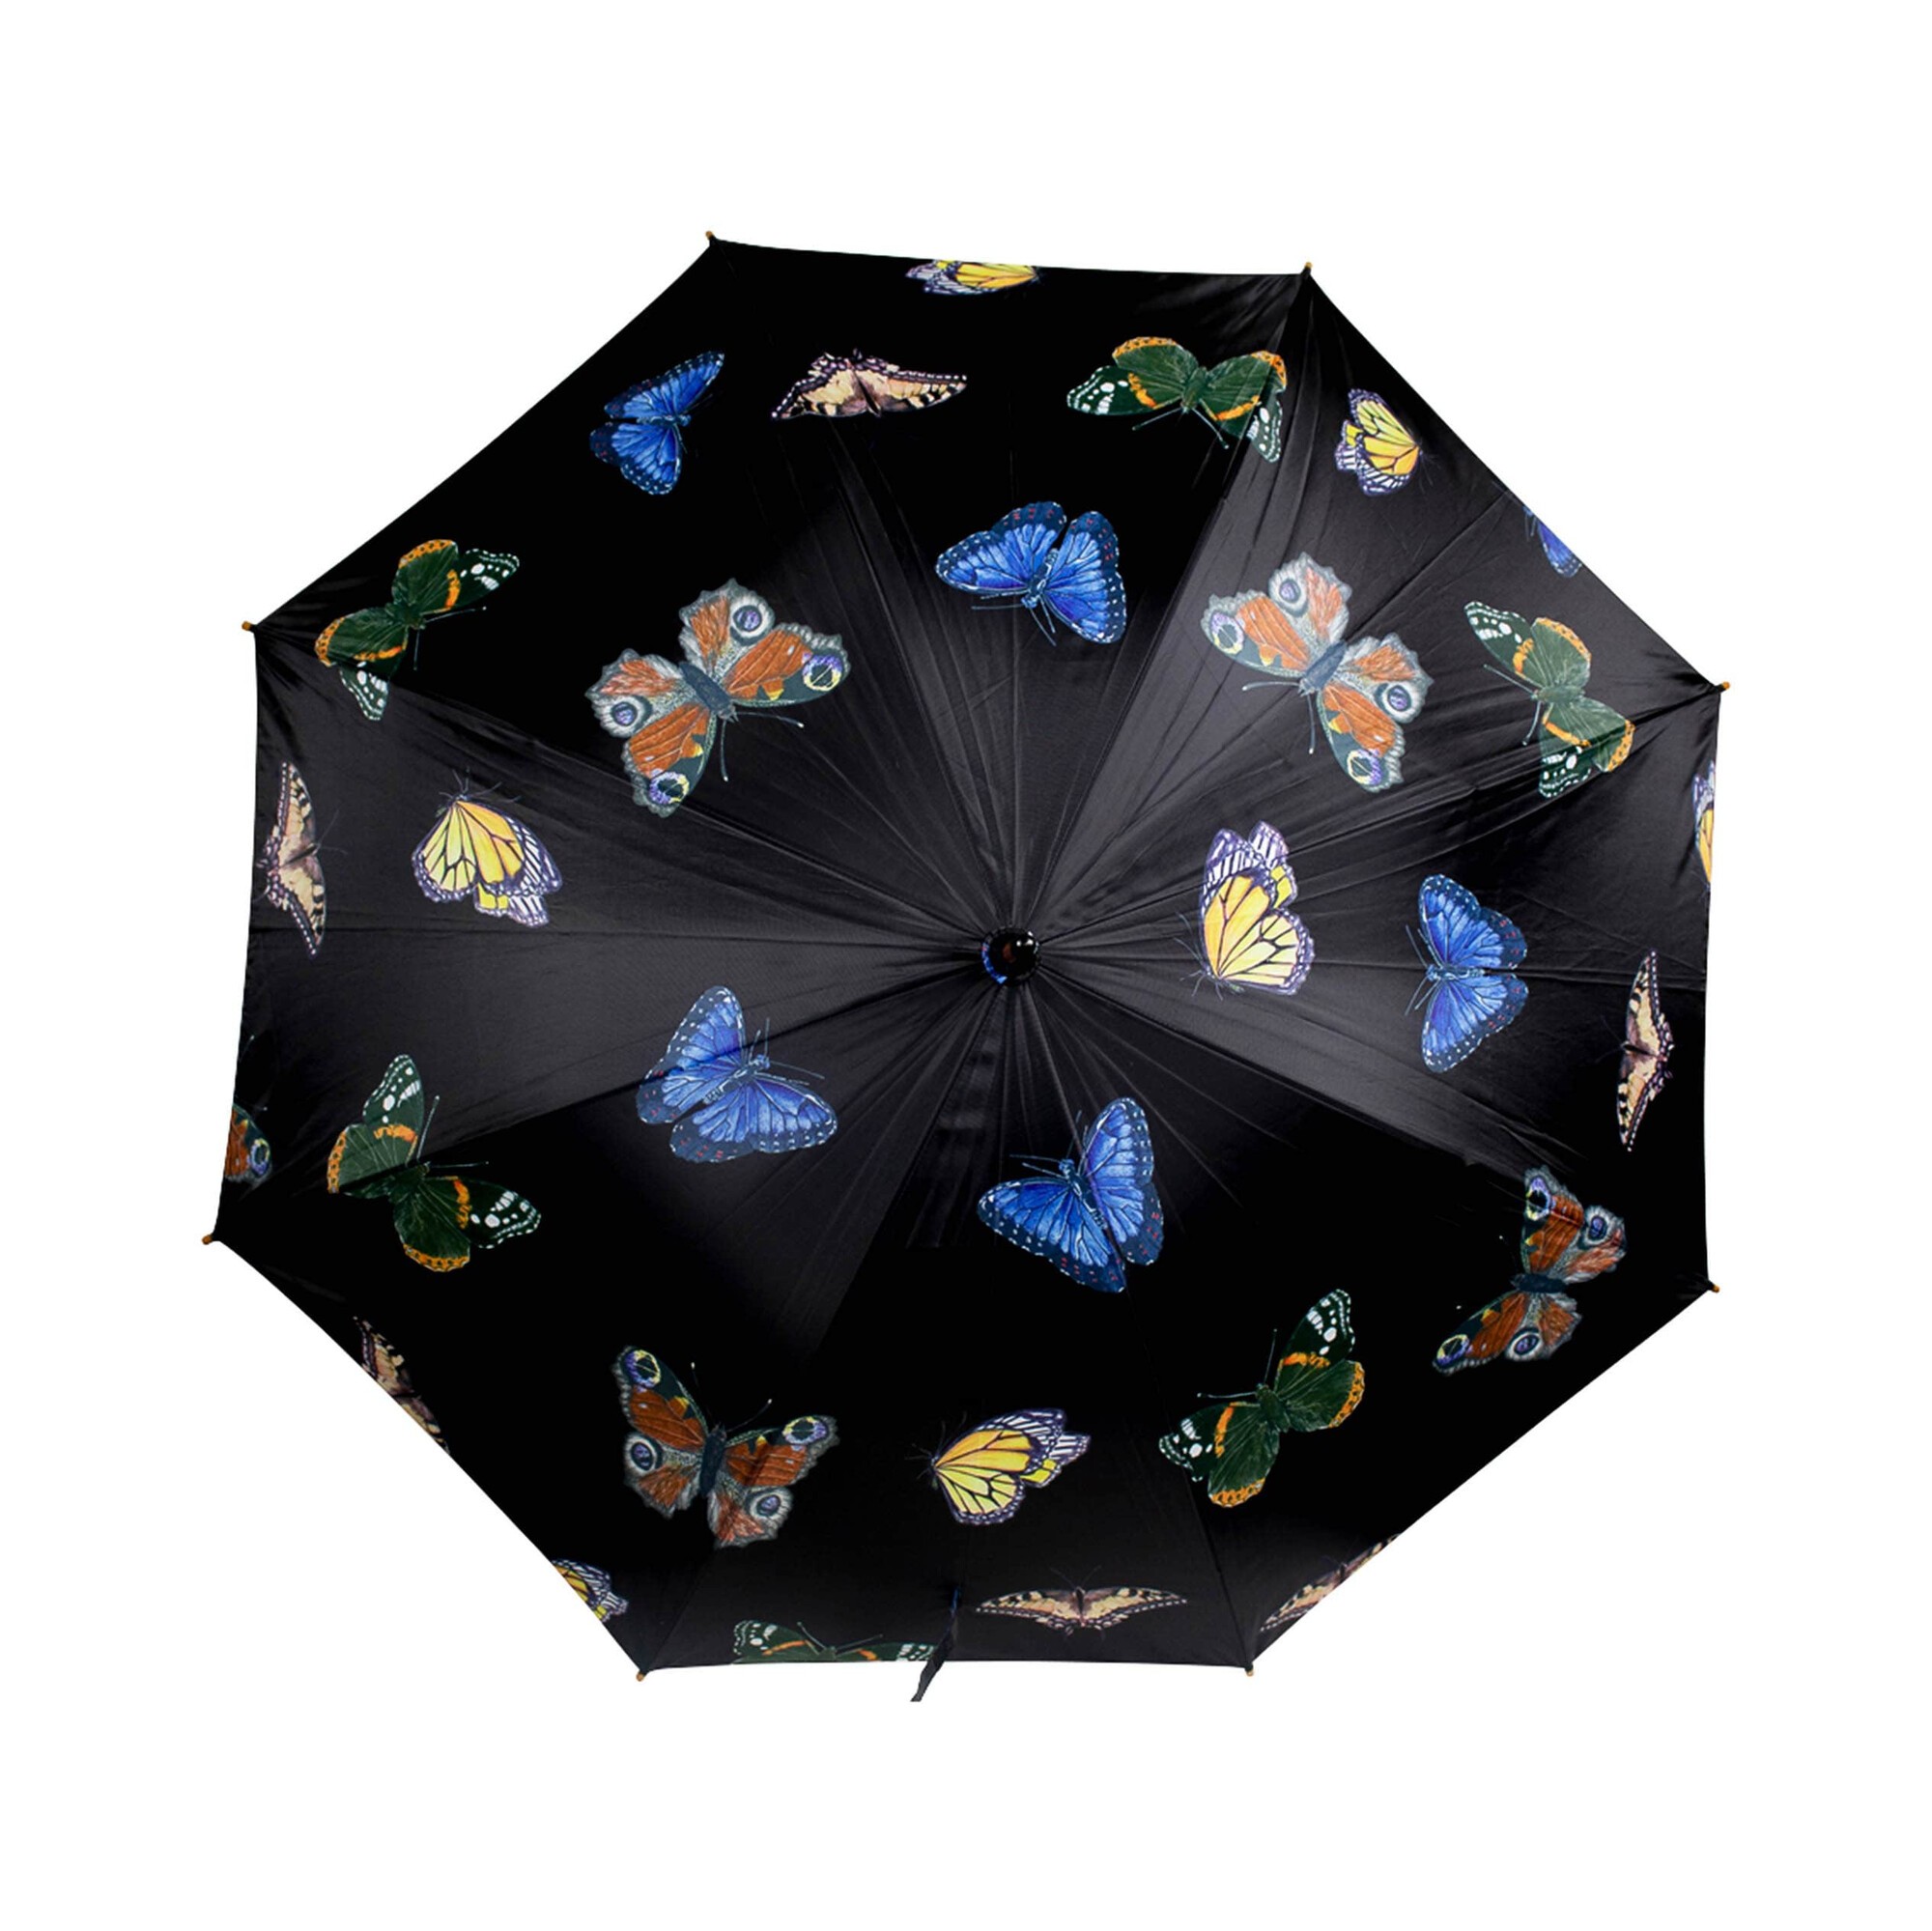 Černý deštník s motýlky - 105*105*88cm Mars & More